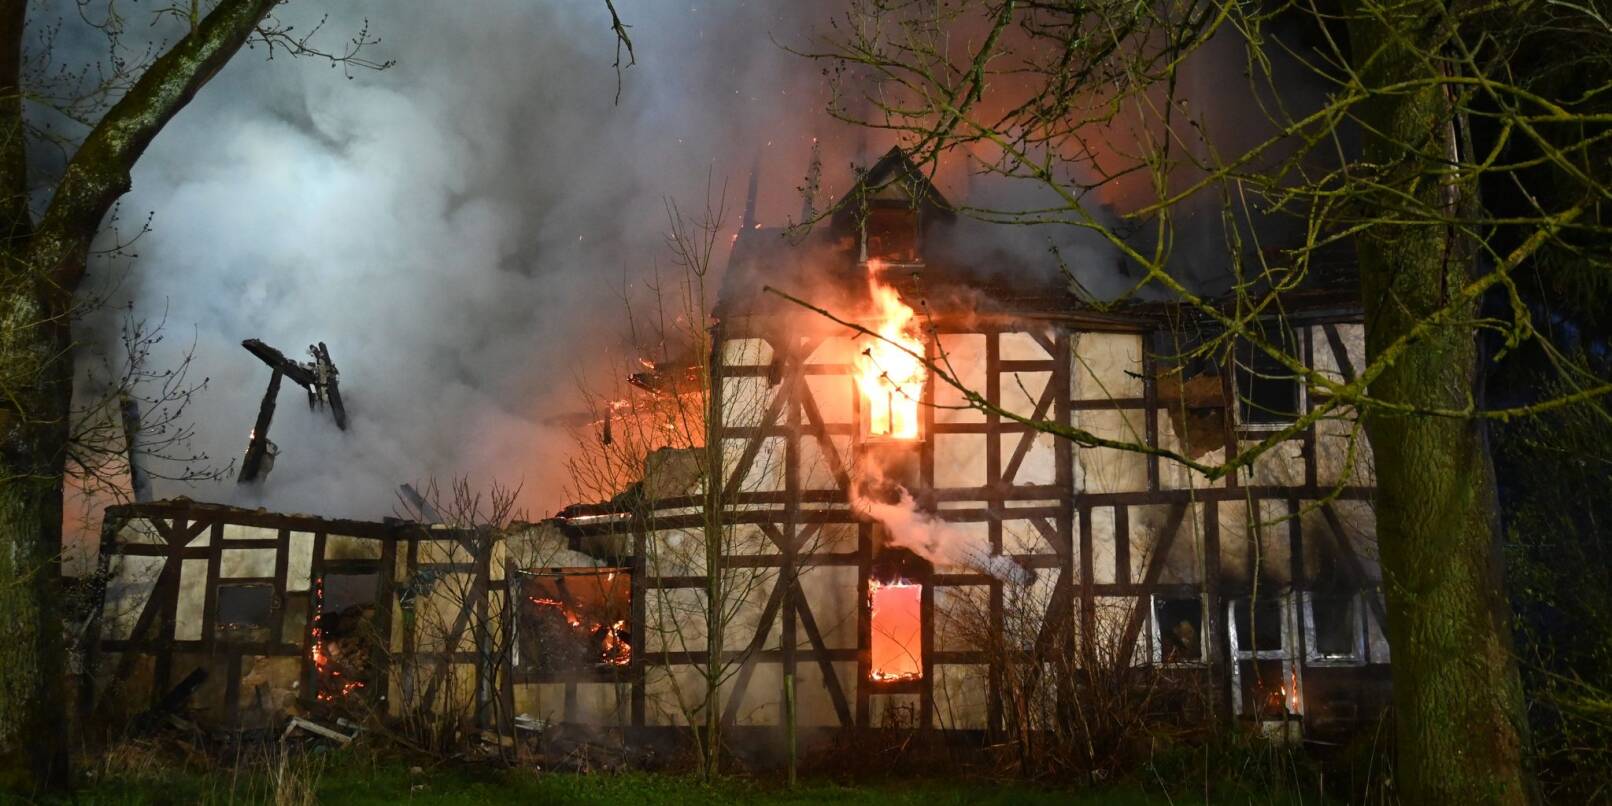 Das frühere Wohnhaus eines als «Kannibalen von Rotenburg» bekannt gewordenen Mannes in Rotenburg an der Fulda brennt.